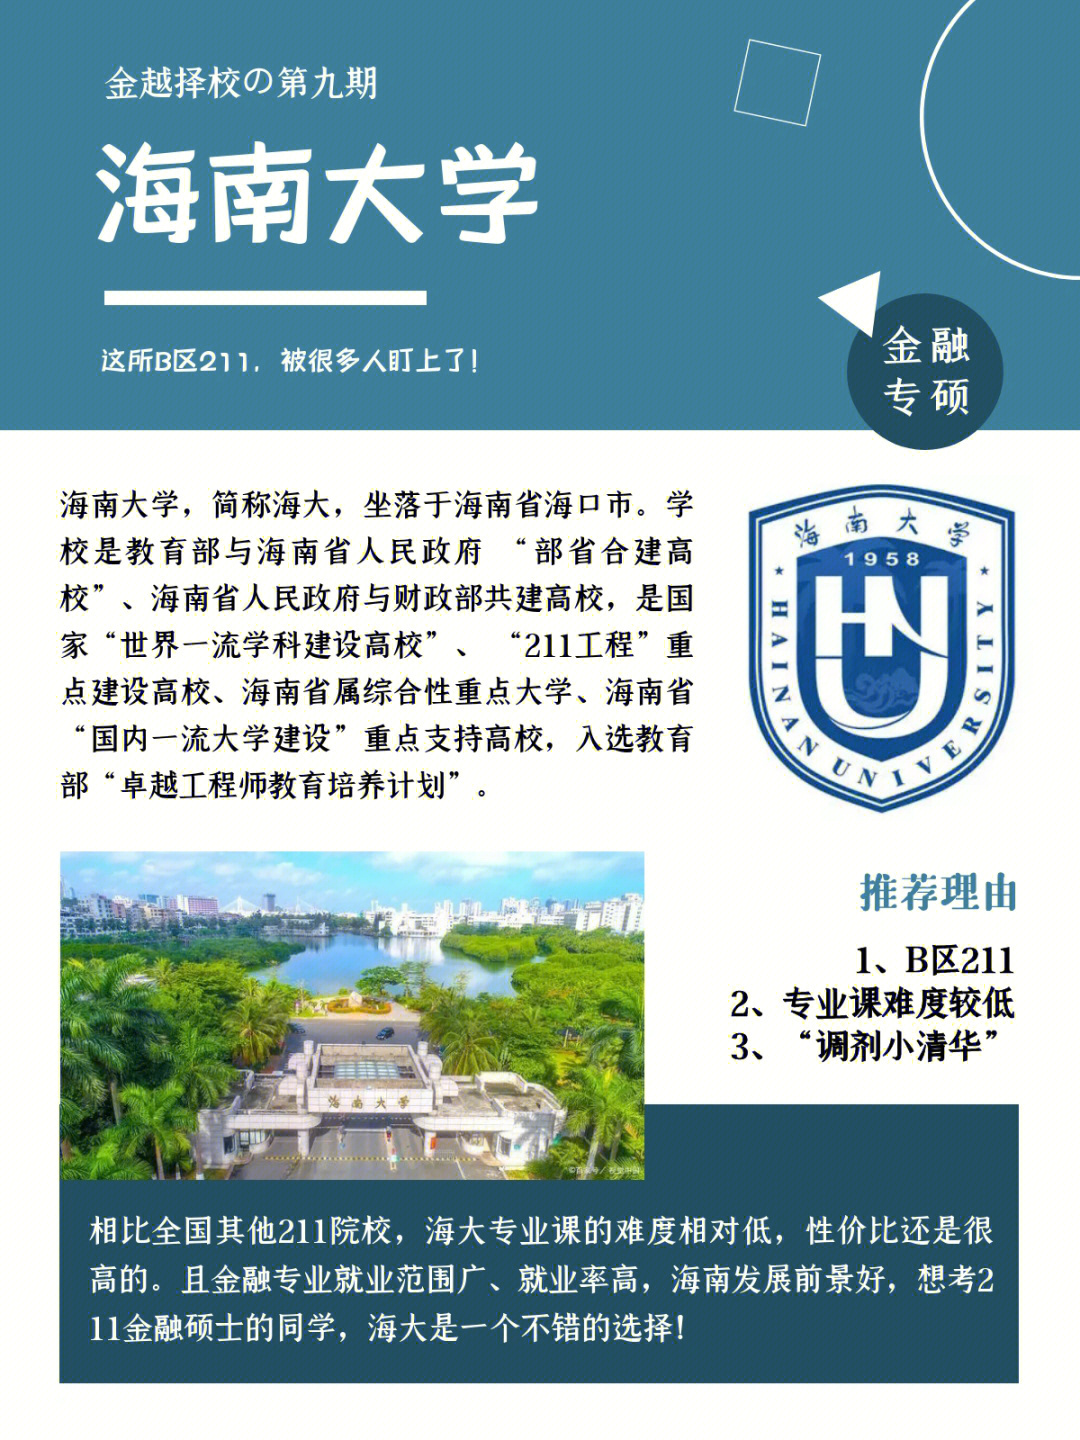 99 学校简介海南大学,简称海大,坐落于海南省海口市